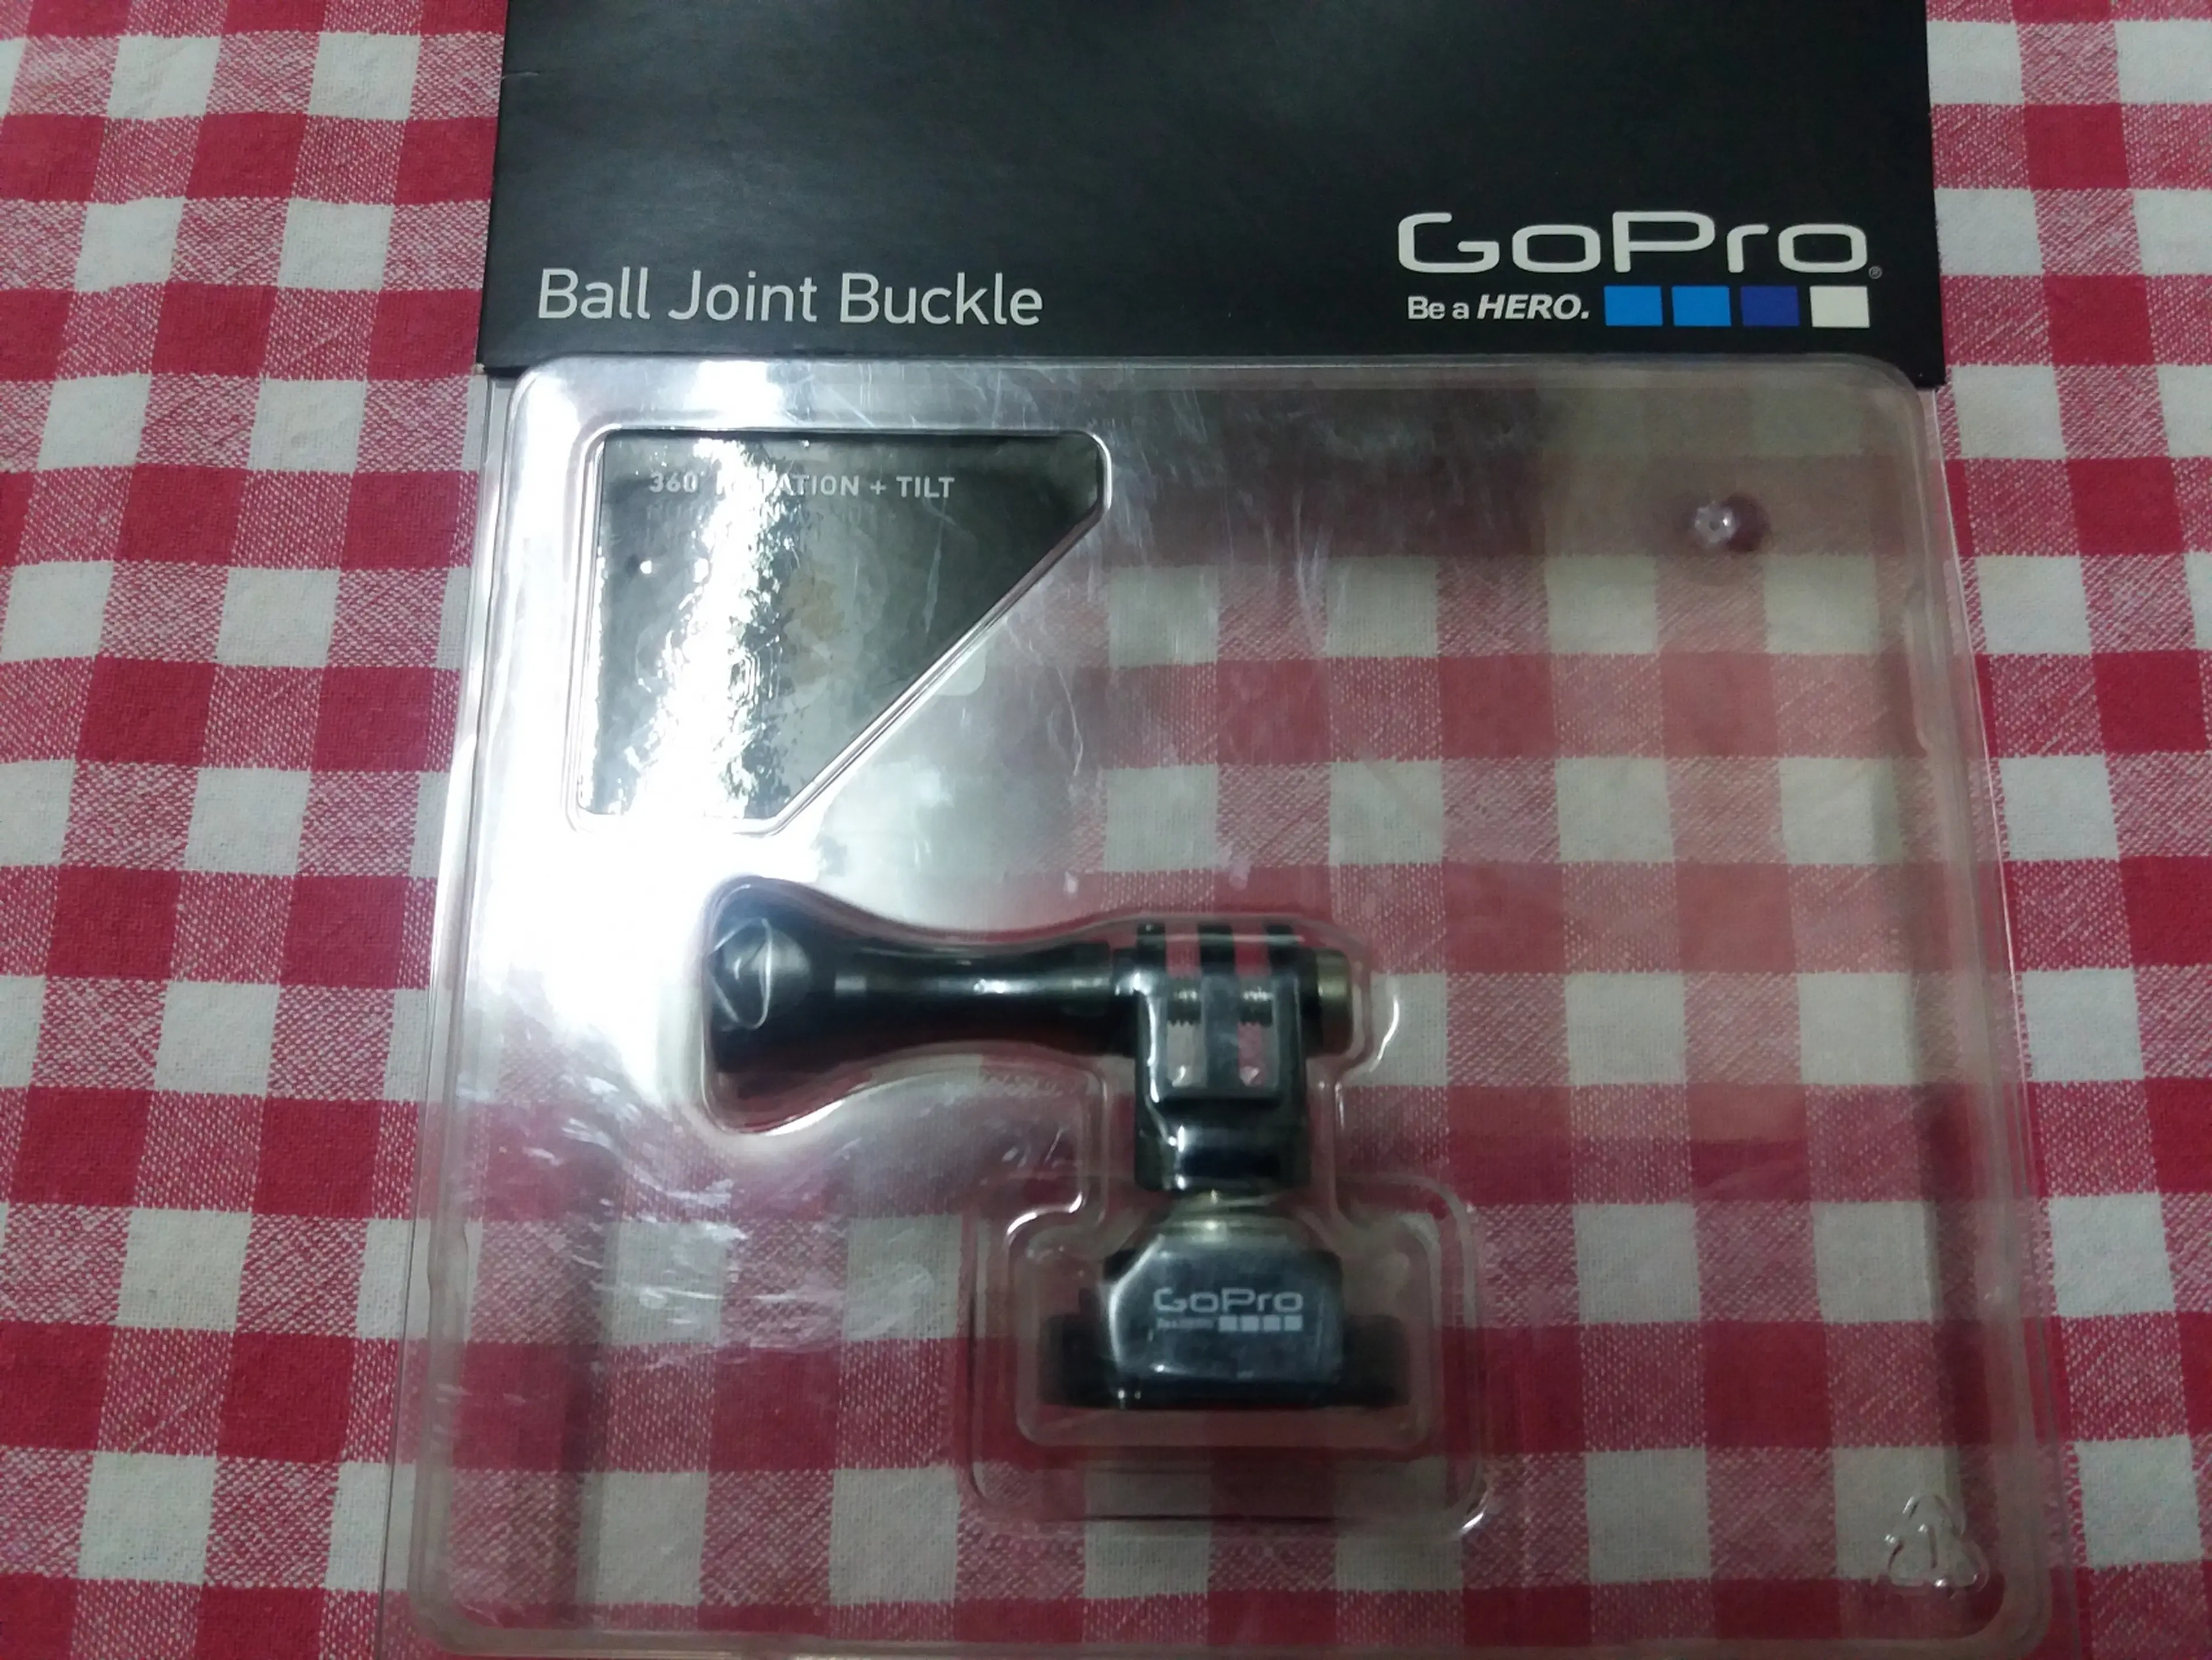 6. GoPro - Ball Joint Buckle - prindere rapida cu articulatie pivotanta rotire 360°